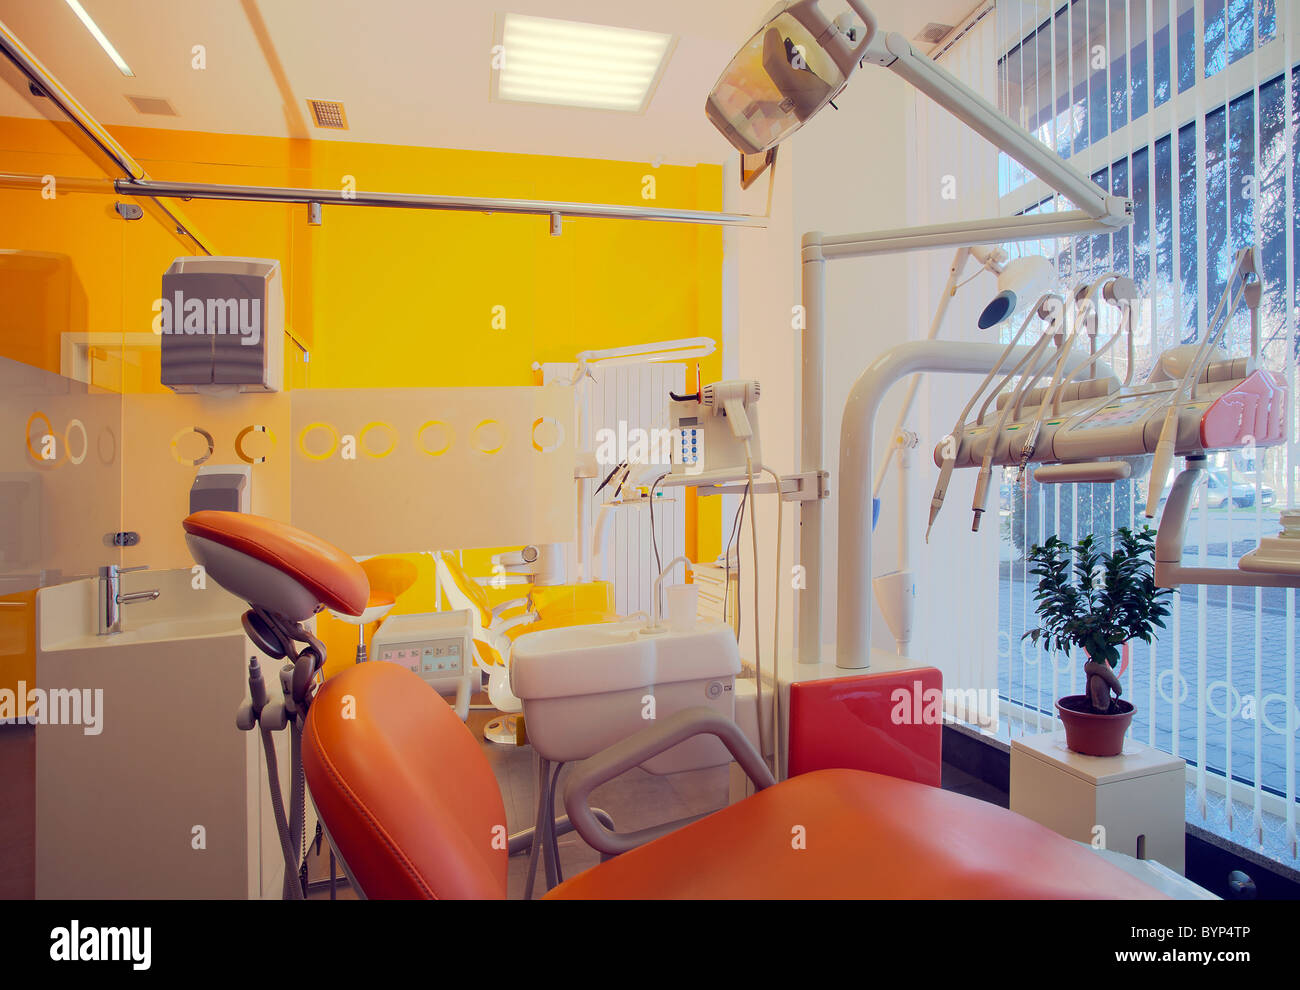 Interno di una clinica dentale, semplice e moderno design minimale. Foto Stock